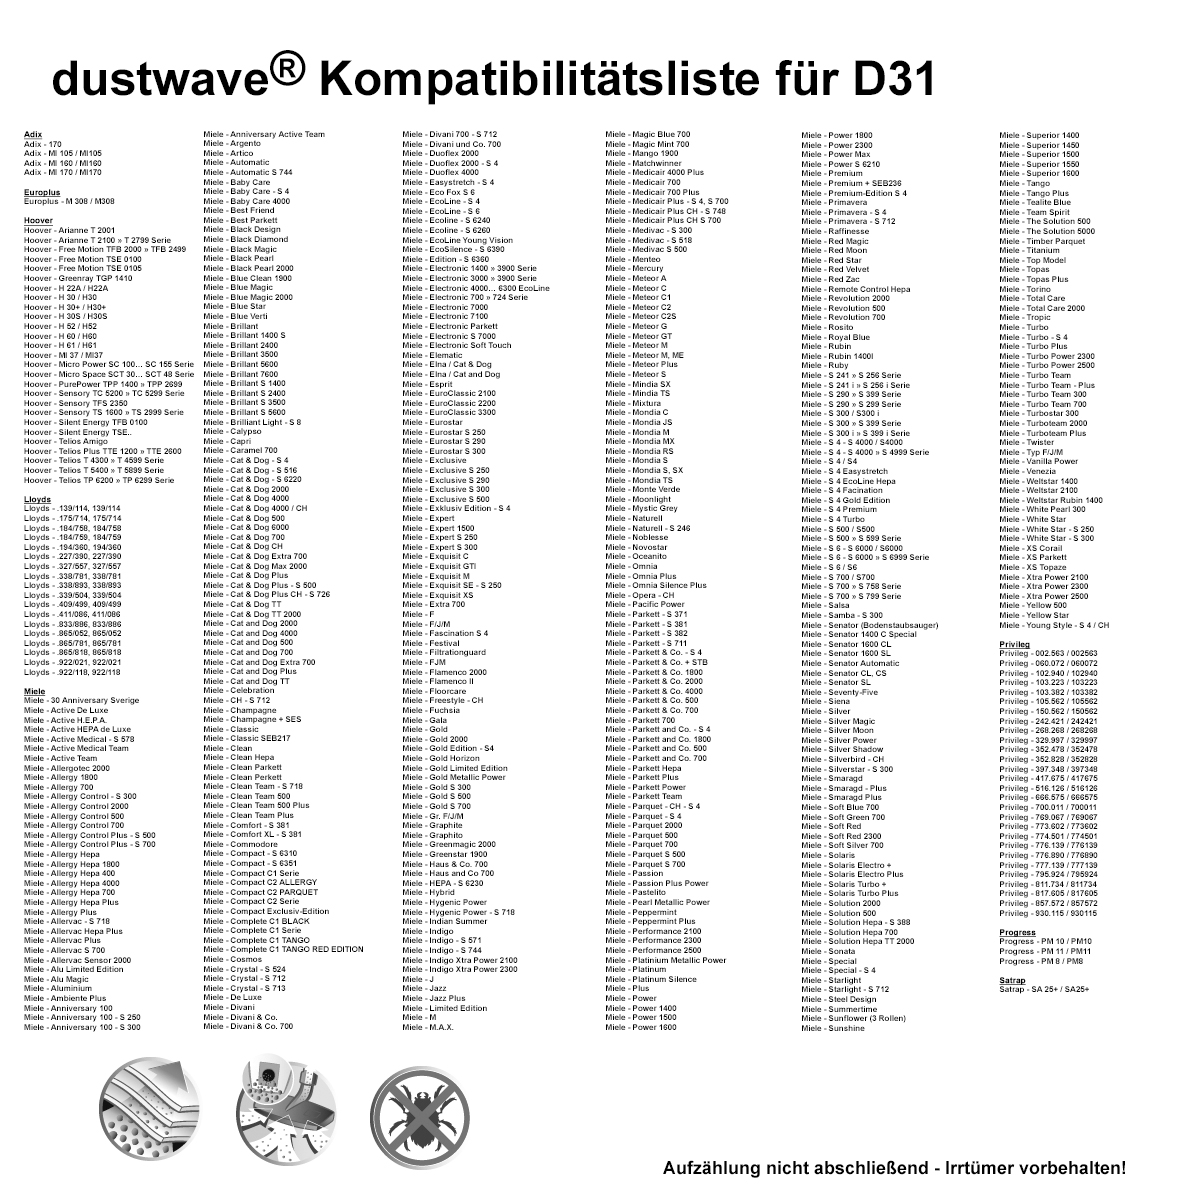 Dustwave® 40 Staubsaugerbeutel für Hoover 39000246 - hocheffizient, mehrlagiges Mikrovlies mit Hygieneverschluss - Made in Germany